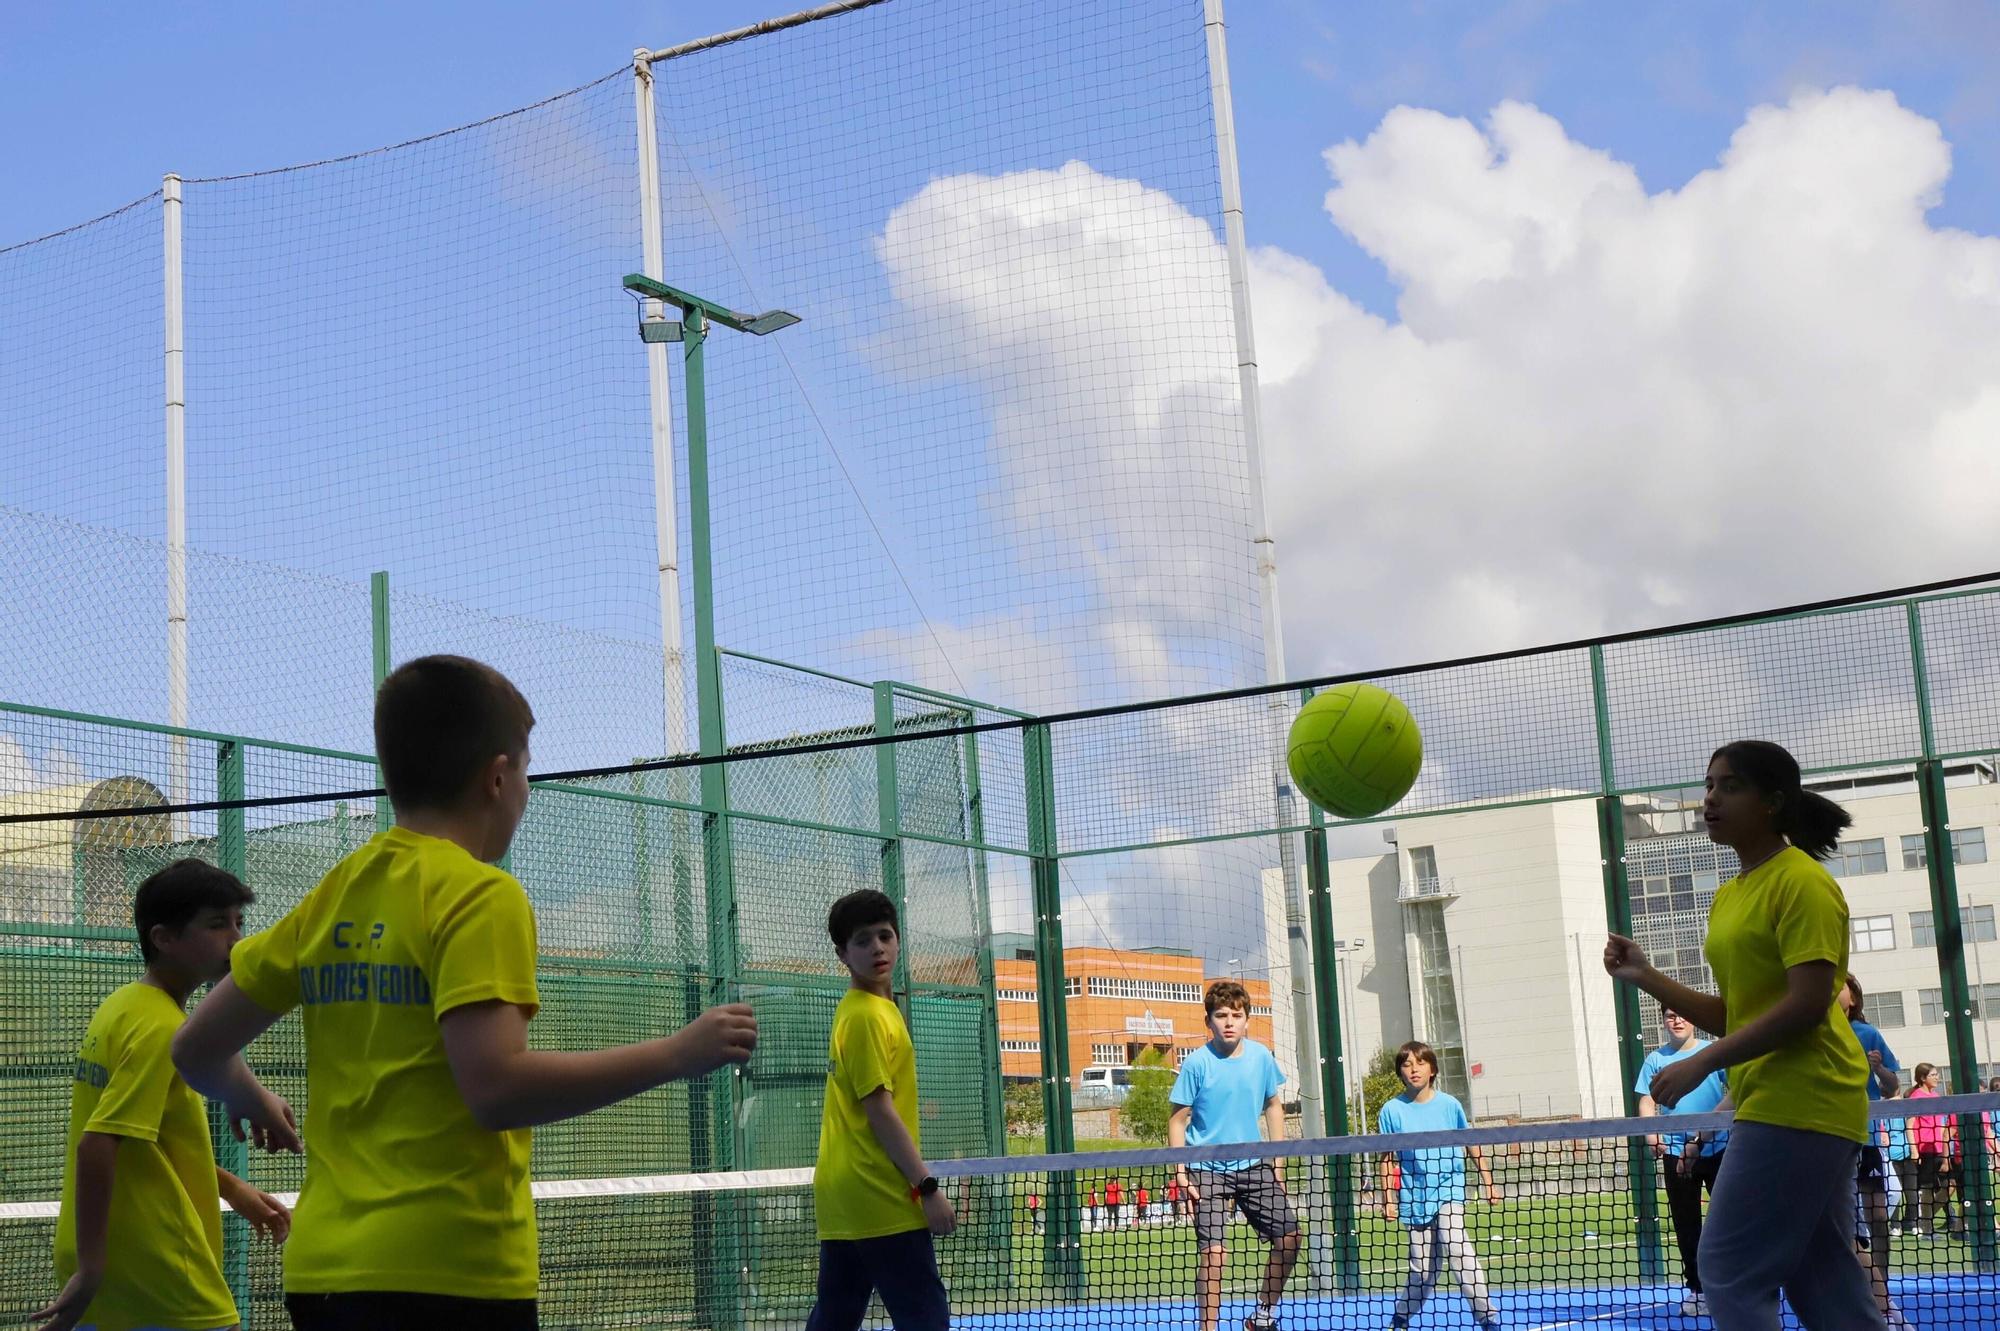 X edición de la olimpiada escolar en las instalaciones deportivas del Cristo, en Oviedo.